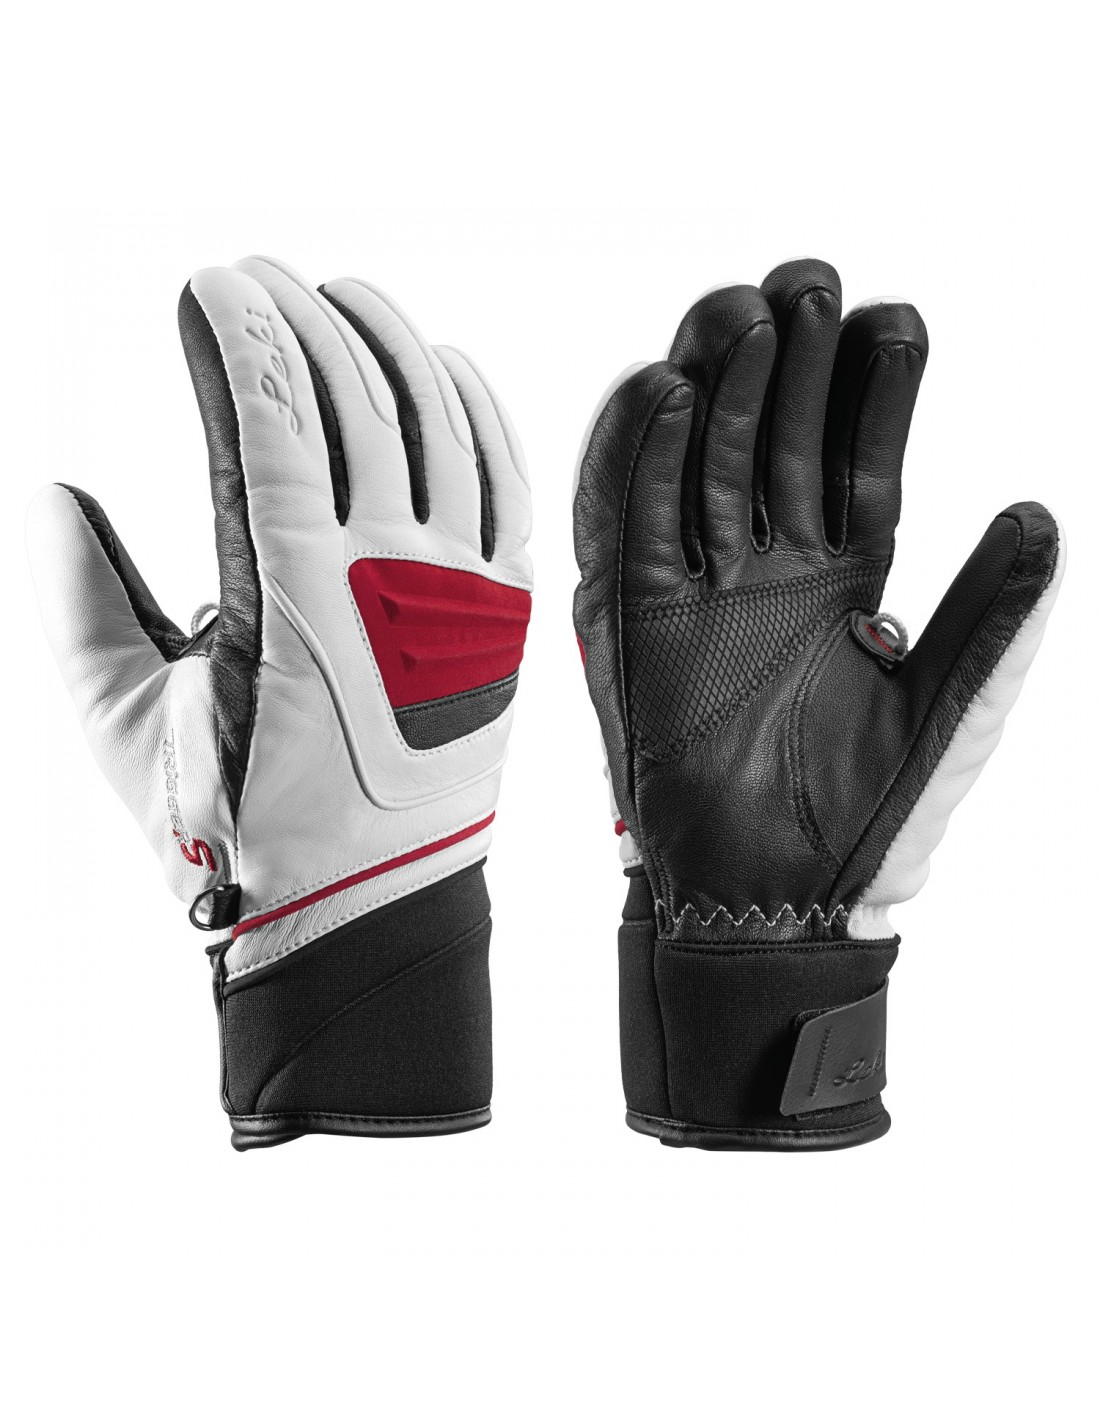 Leki Handschuh Griffin S Lady weiß-schwarz-bordo Handschuhvariante - Handschuhe, Handschuhgröße - 6.5, Handschuhfarbe - Black - Red - White, von Leki